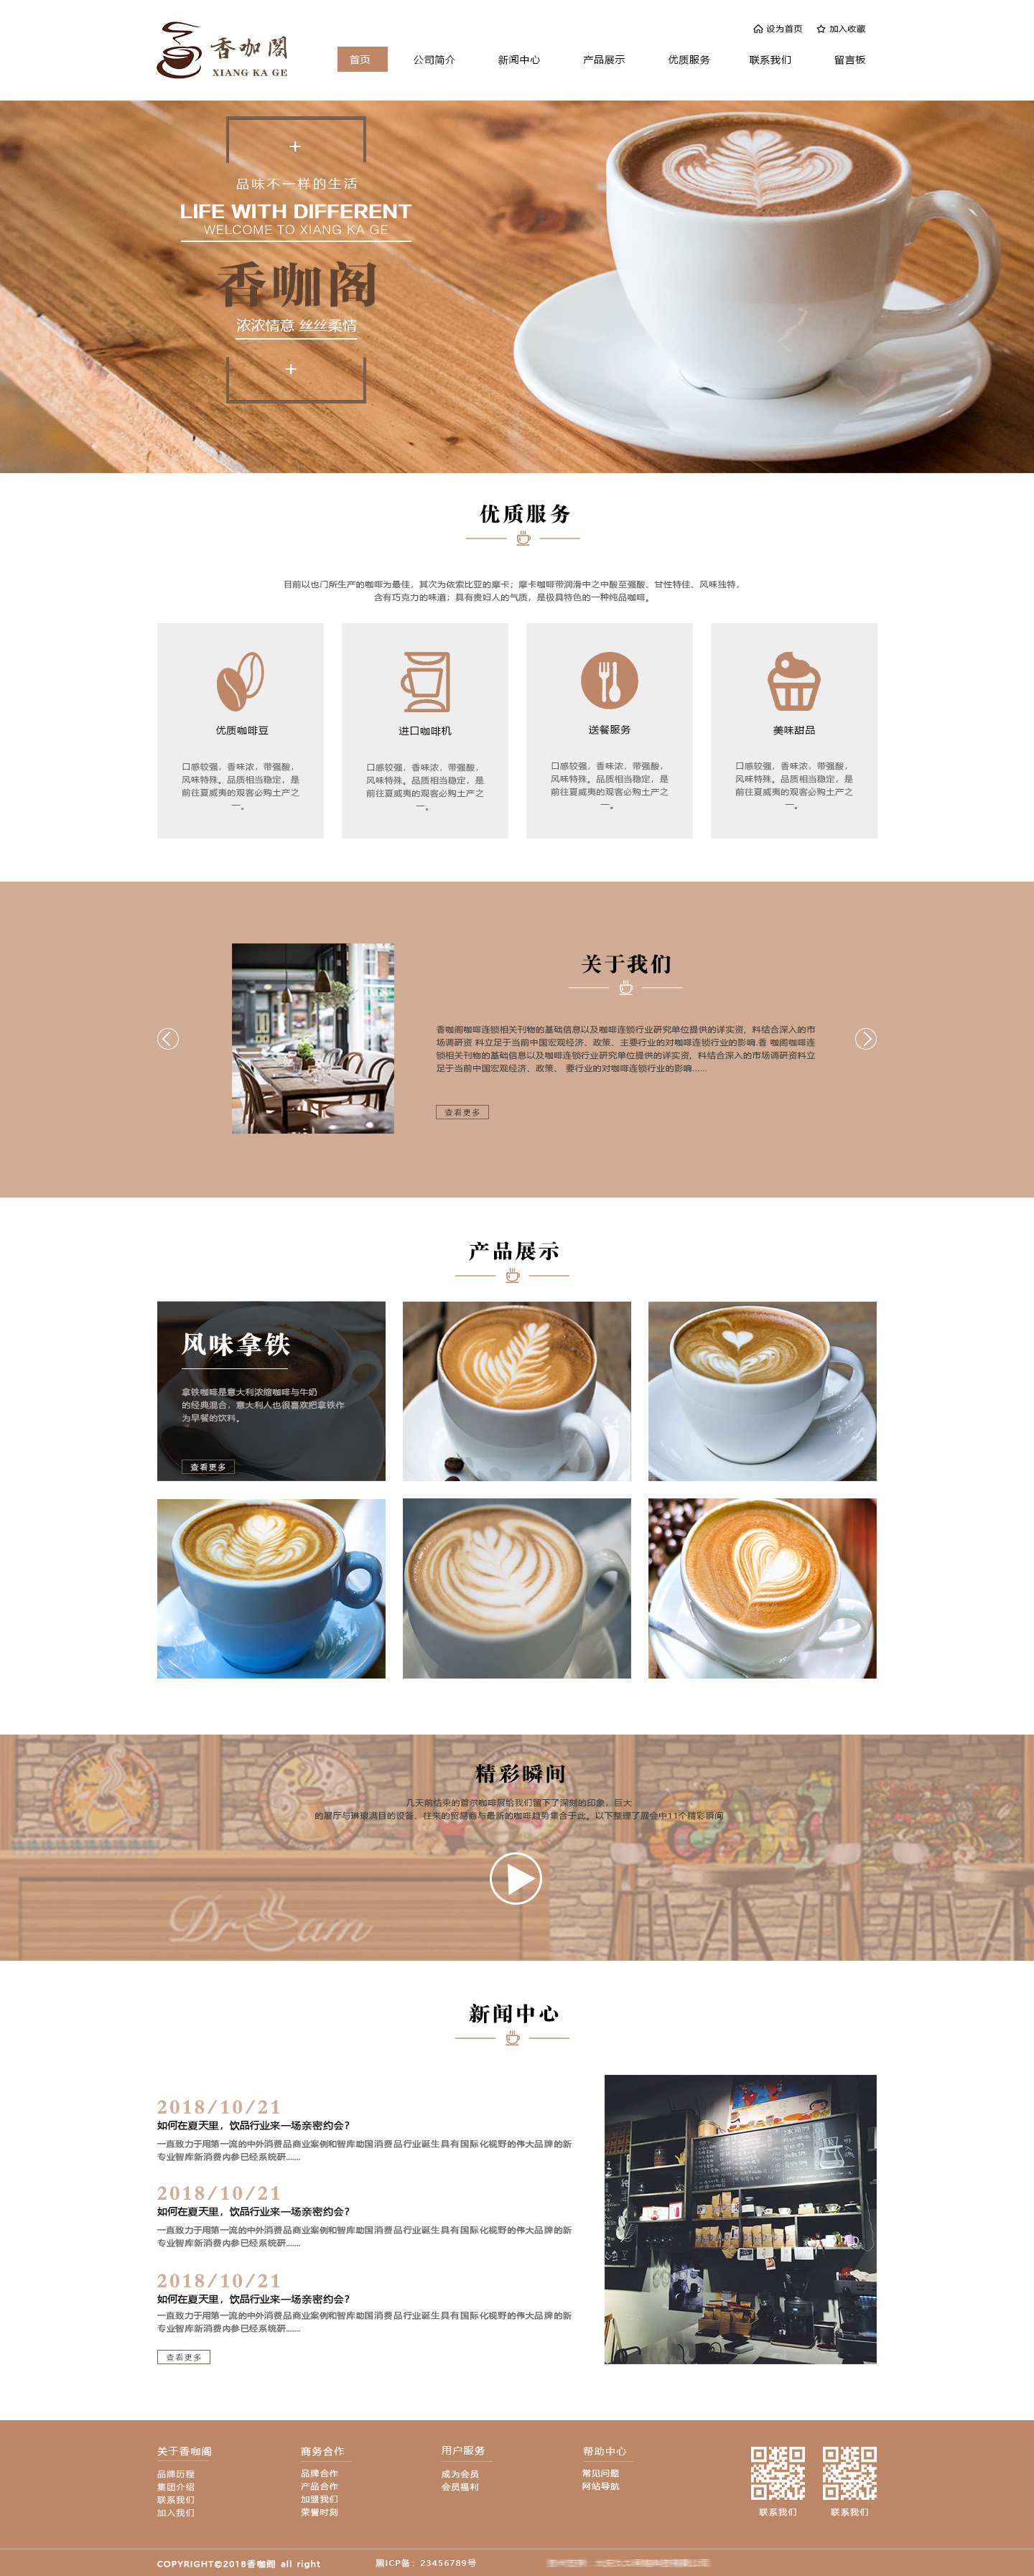 香咖阁咖啡网页设计